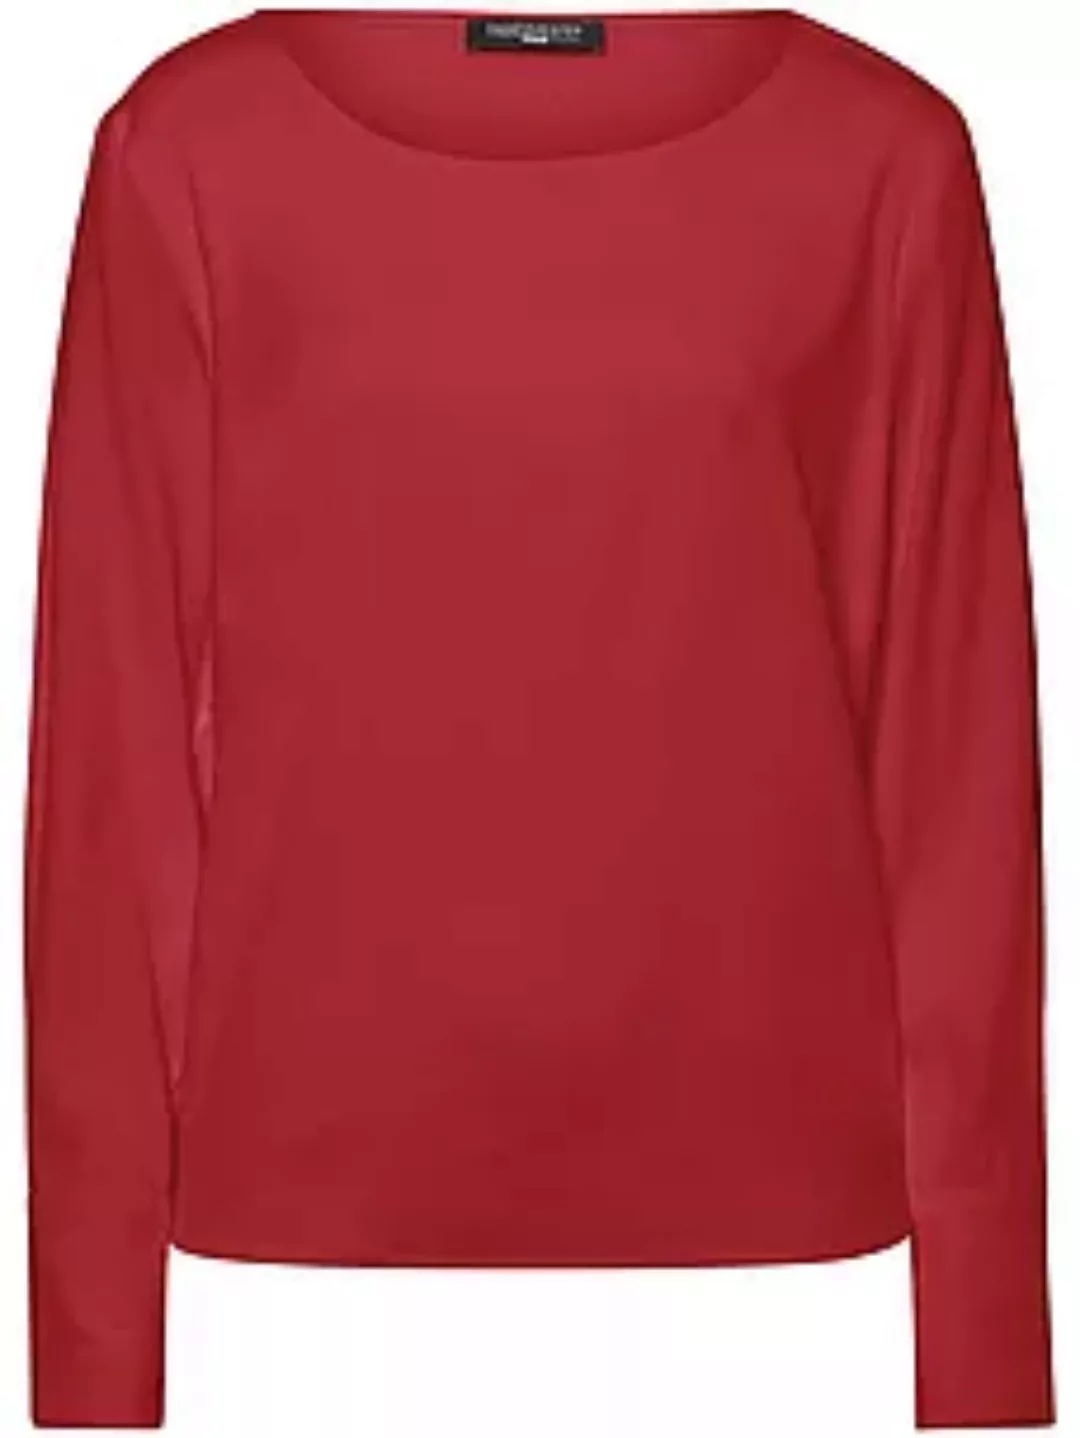 Blusen-Shirt Fadenmeister Berlin rot günstig online kaufen